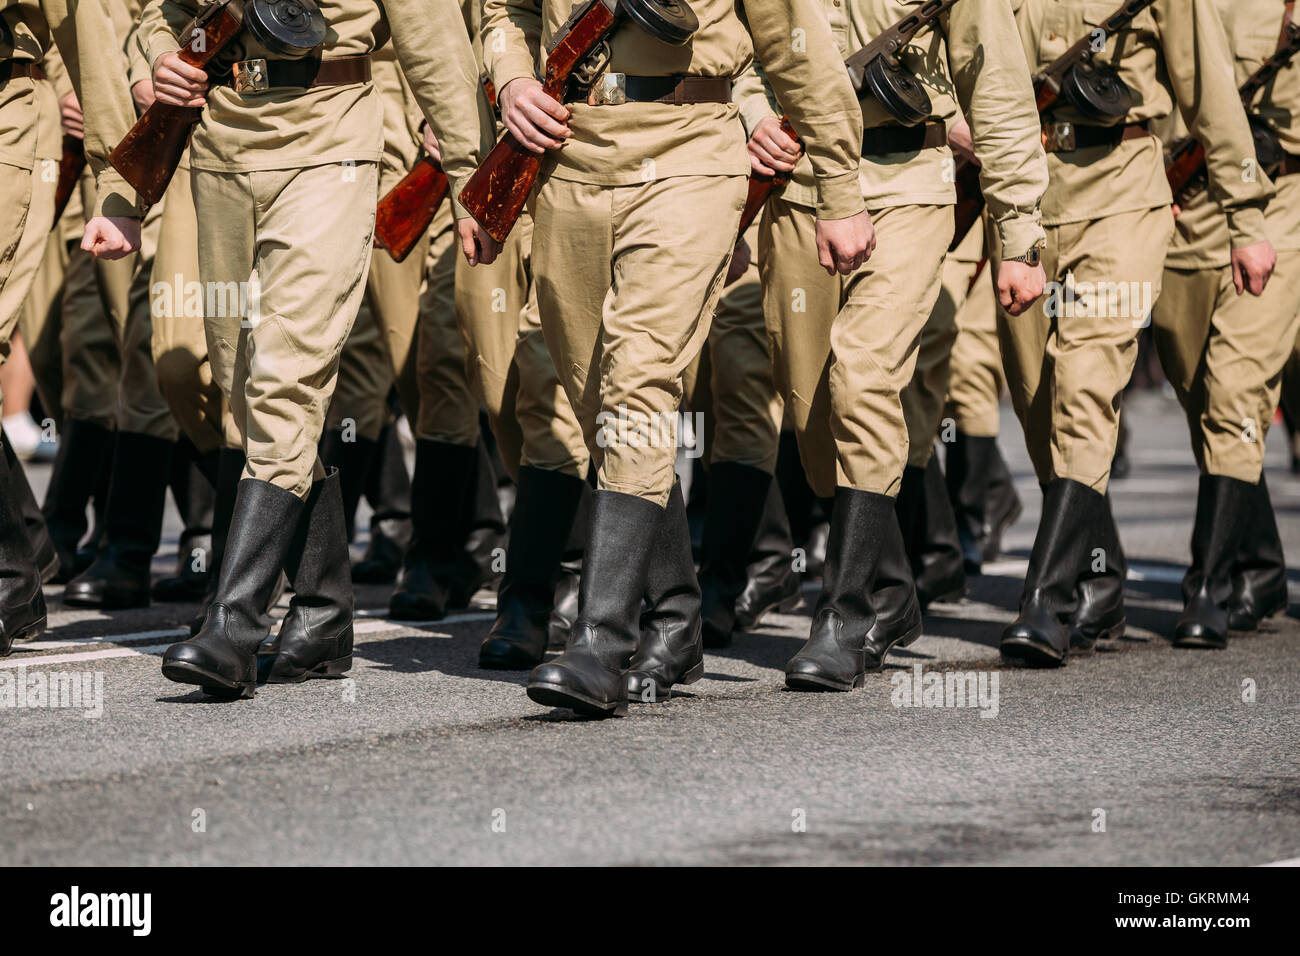 Die Soldaten Füße In russische sowjetische Uniform WW2 Zeit In marschierenden Haltung auf dem Asphalt. Die Parade-Bildung der jährlichen Victor Stockfoto